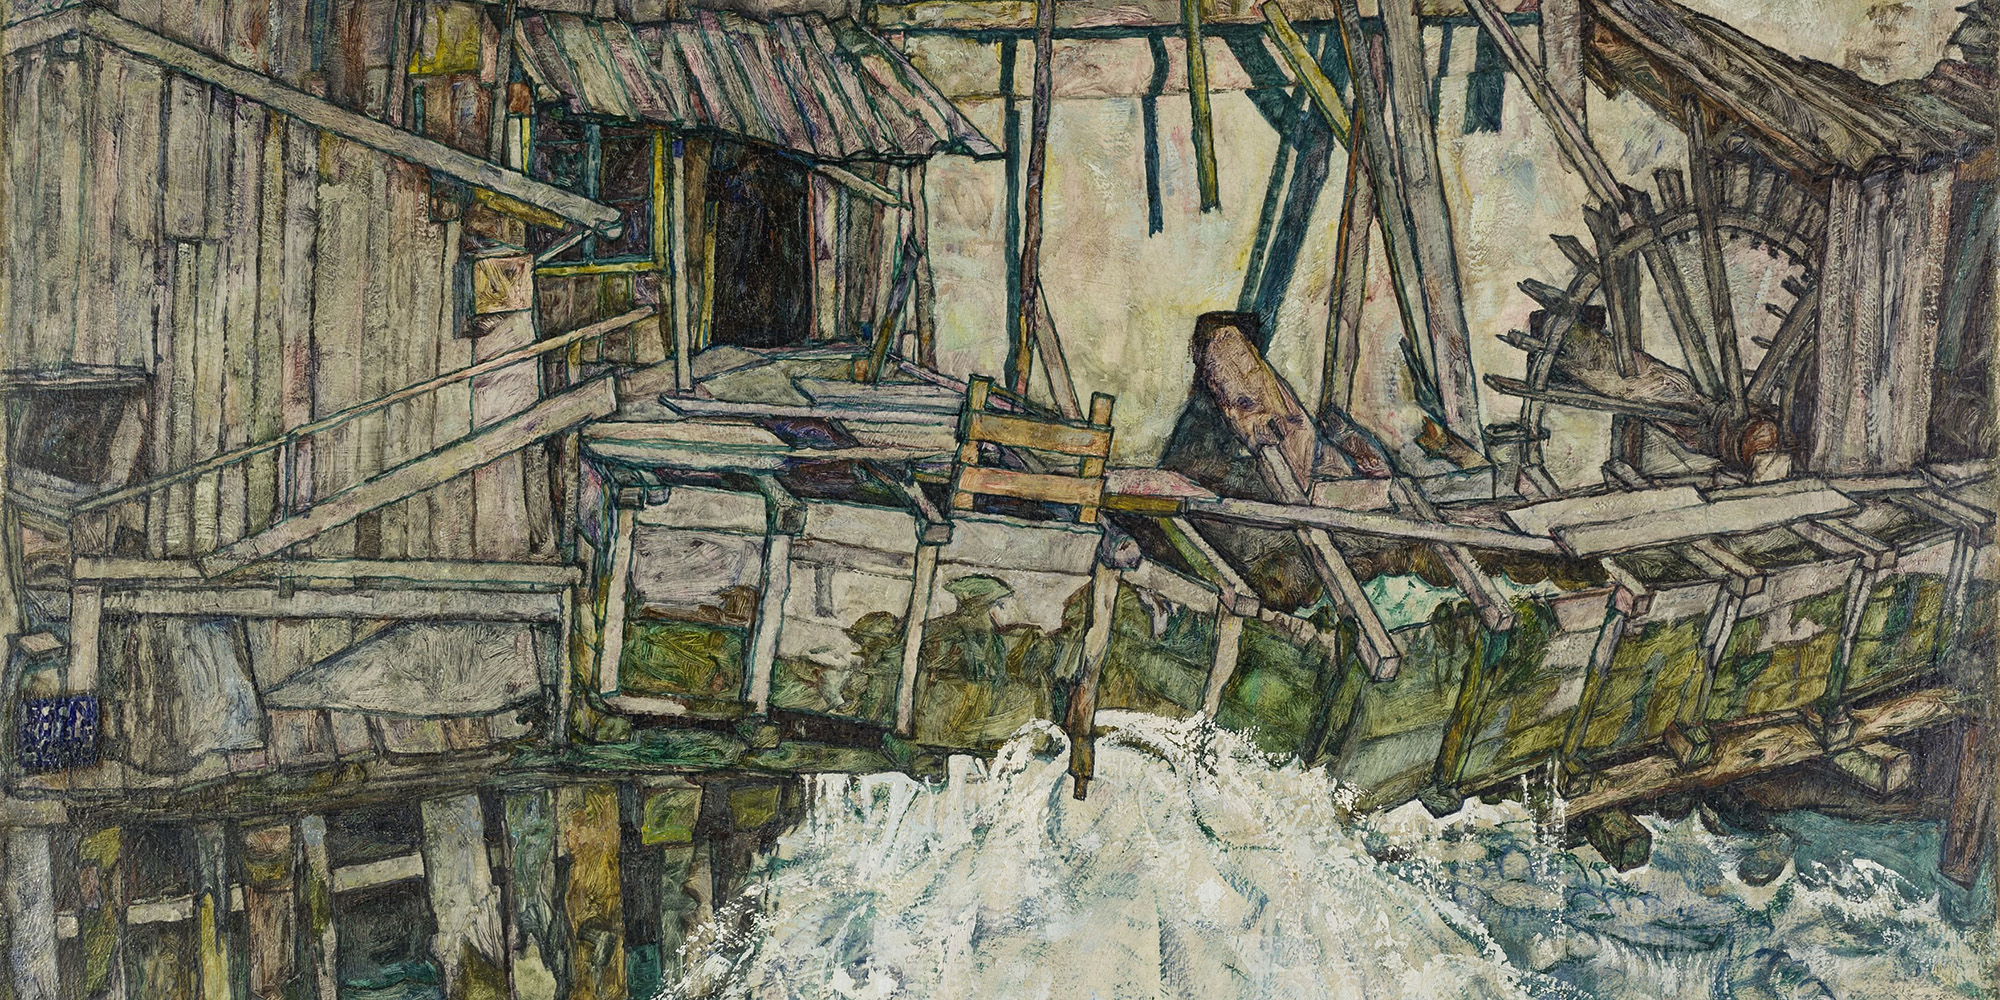 © Egon Schiele, Zerfallende Mühle, 1916, Öl auf Leinwand, Bildausschnitt © Landessammlungen NÖ